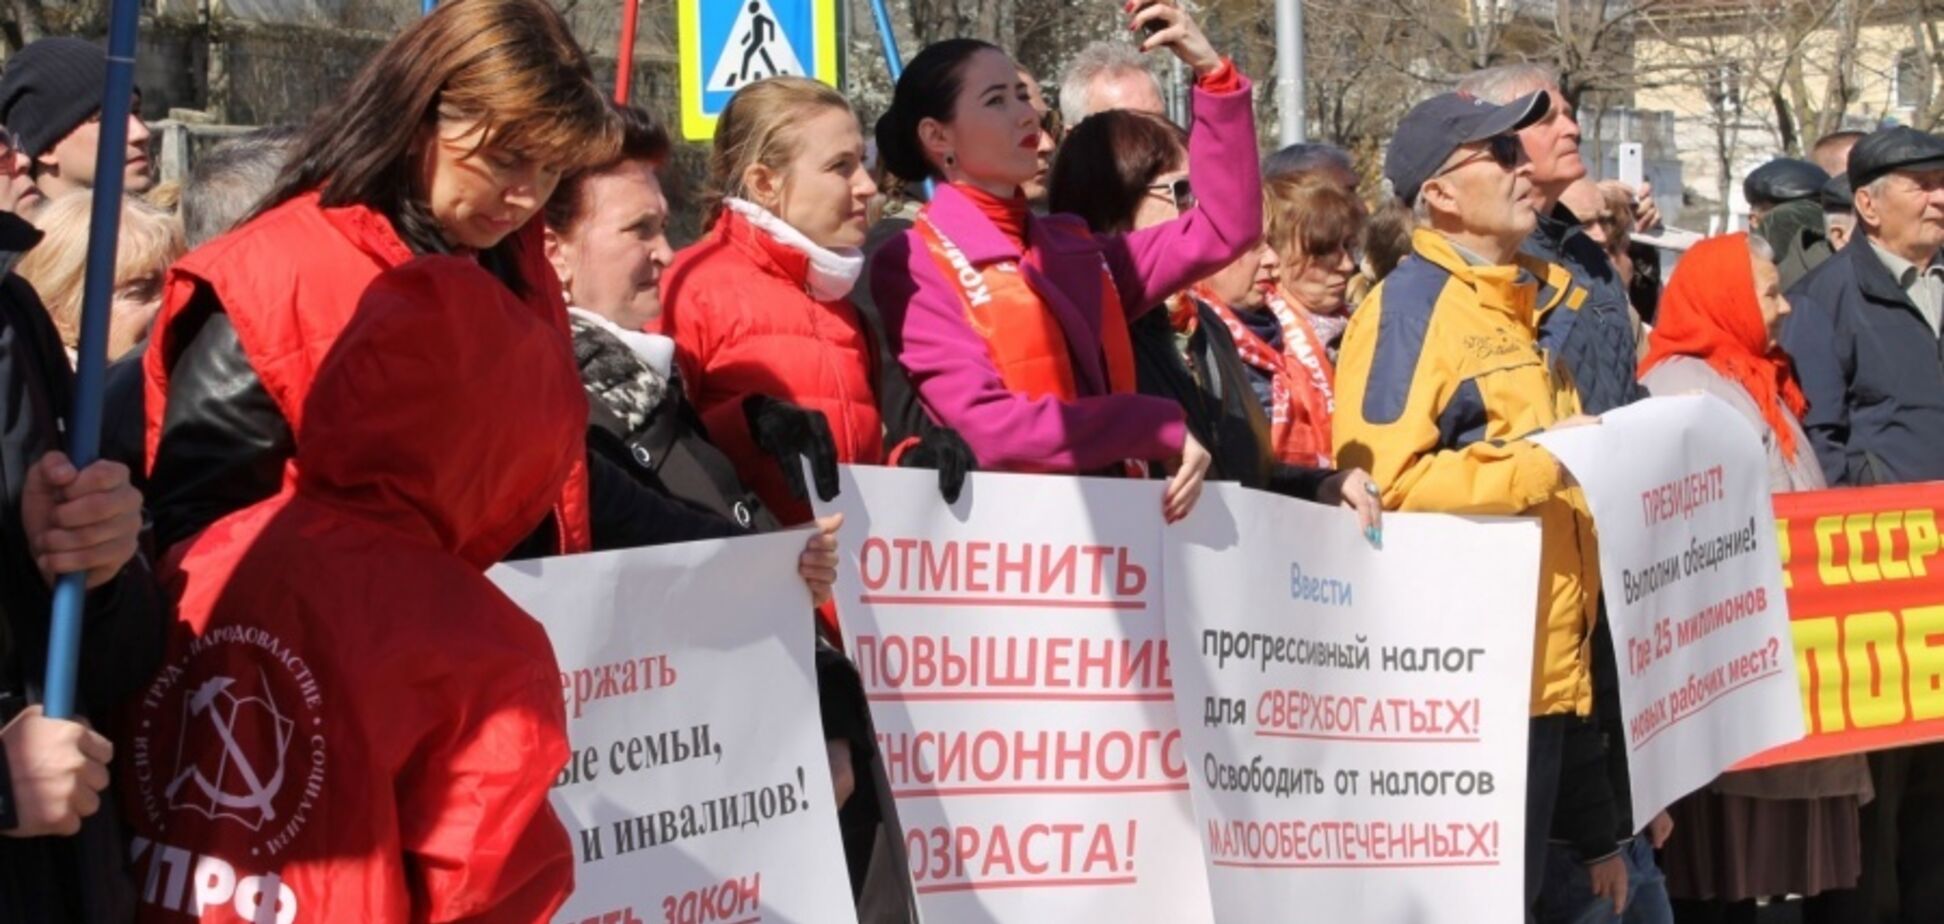 'Путин, выполни обещание!' В Крыму устроили массовый протест. Фото с места событий